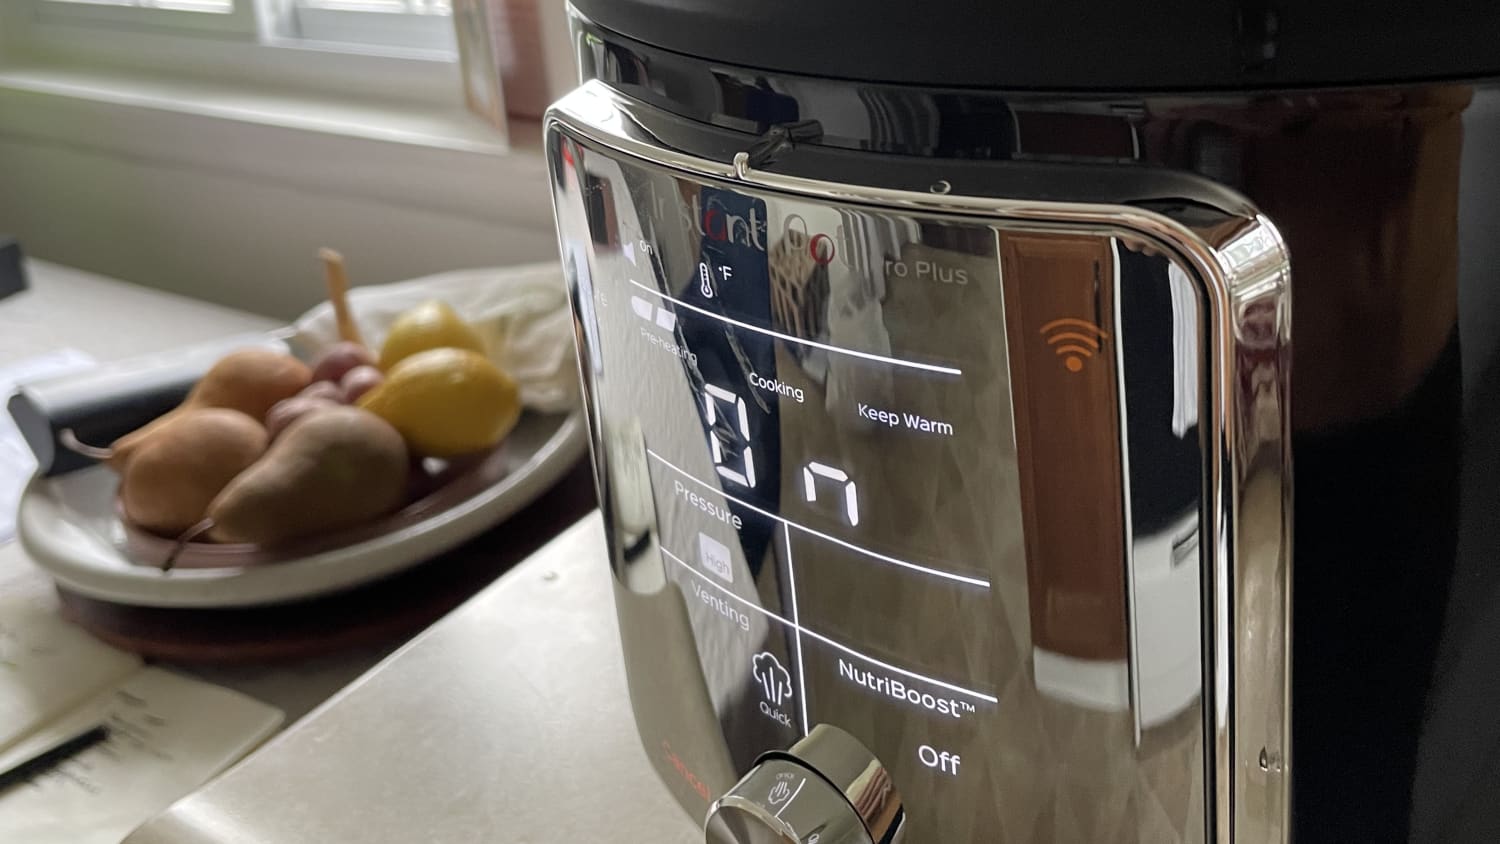 Instant Pot Pro Plus review: Instant's smartest cooker yet